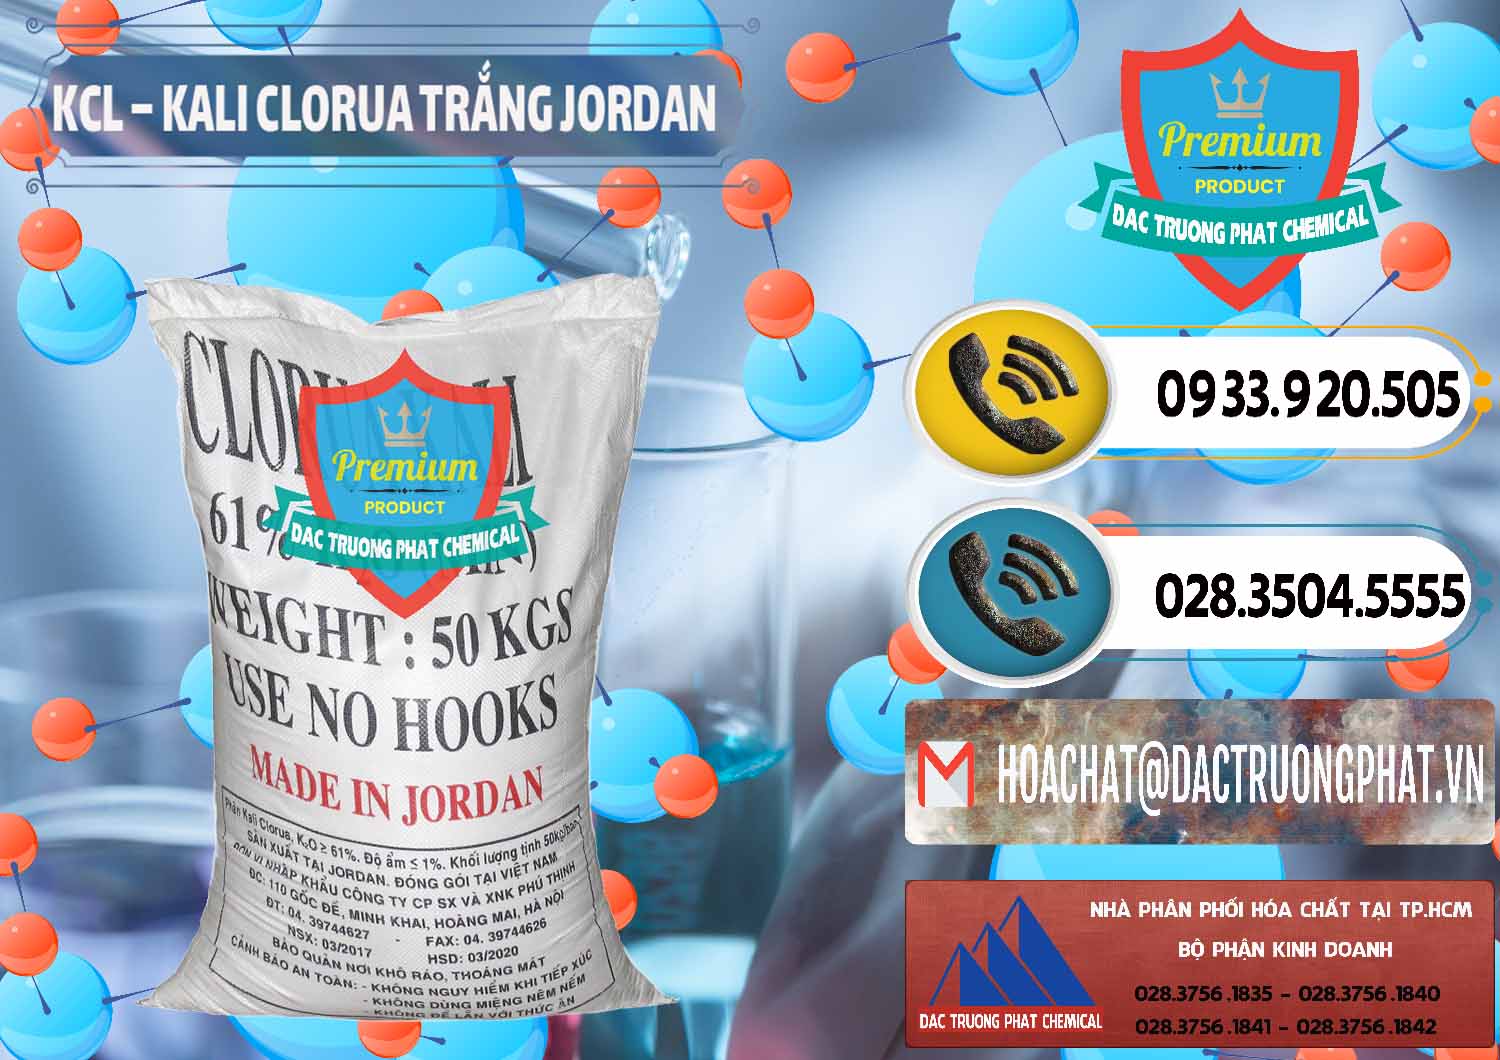 Cty chuyên bán và cung cấp KCL – Kali Clorua Trắng Jordan - 0088 - Chuyên cung cấp ( phân phối ) hóa chất tại TP.HCM - hoachatdetnhuom.vn